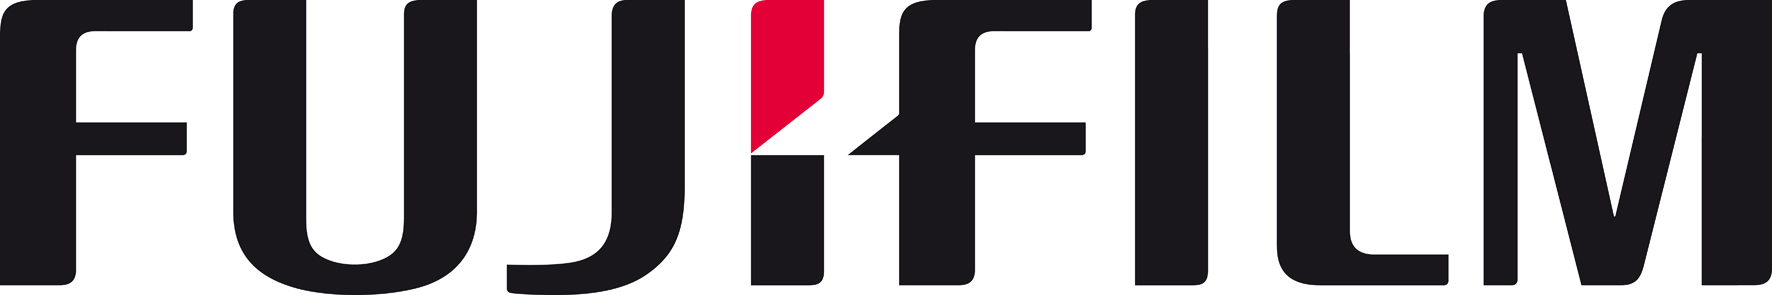 Fujifilm Logos